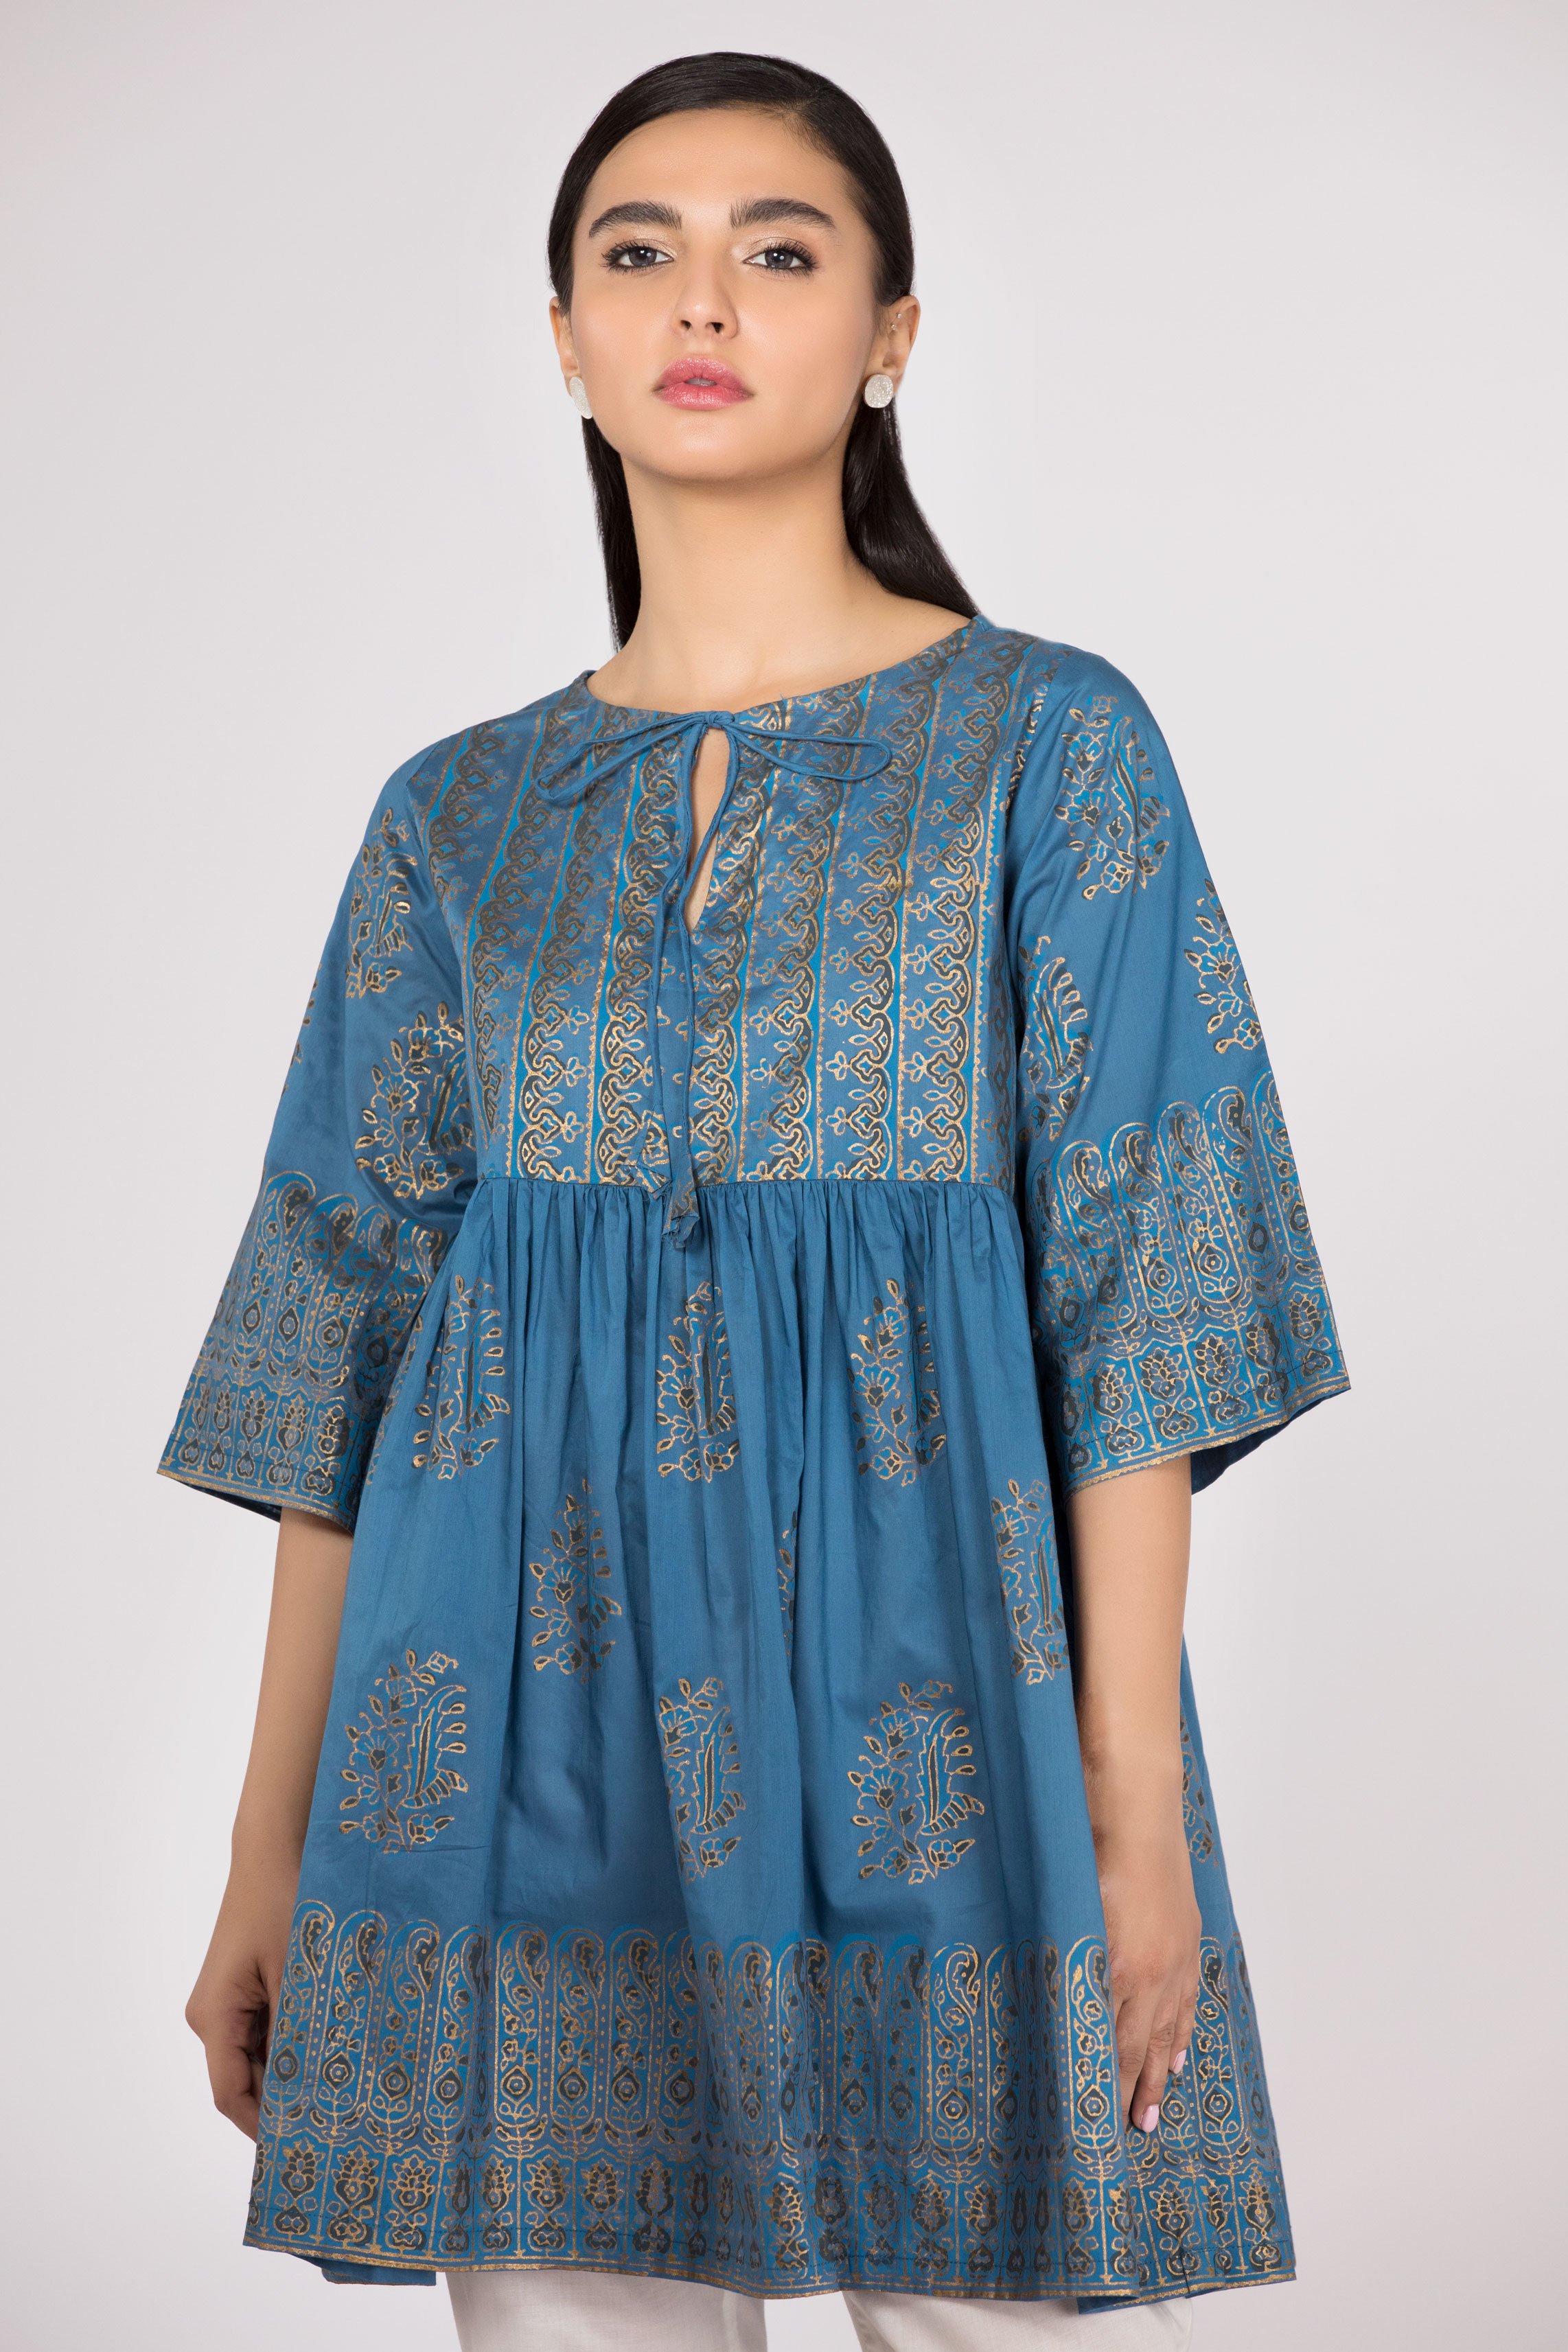 royal blue pakistani dresses